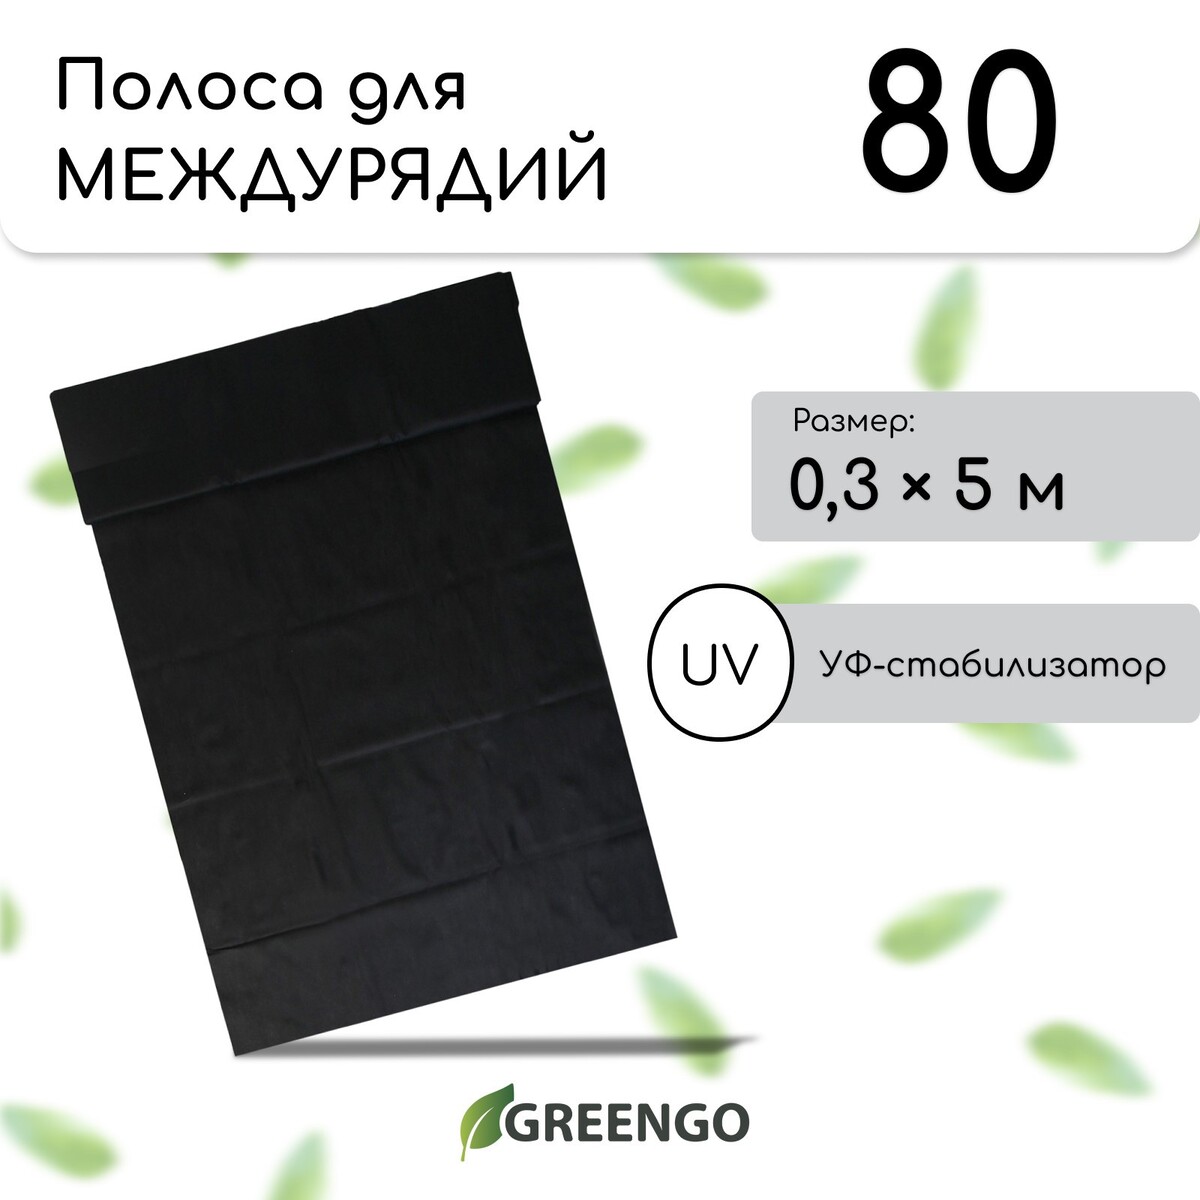 Полоса защитная для междурядий, 5 × 0,3, плотность 80 г/м², спанбонд с уф-стабилизатором, черная, greengo, эконом 30%